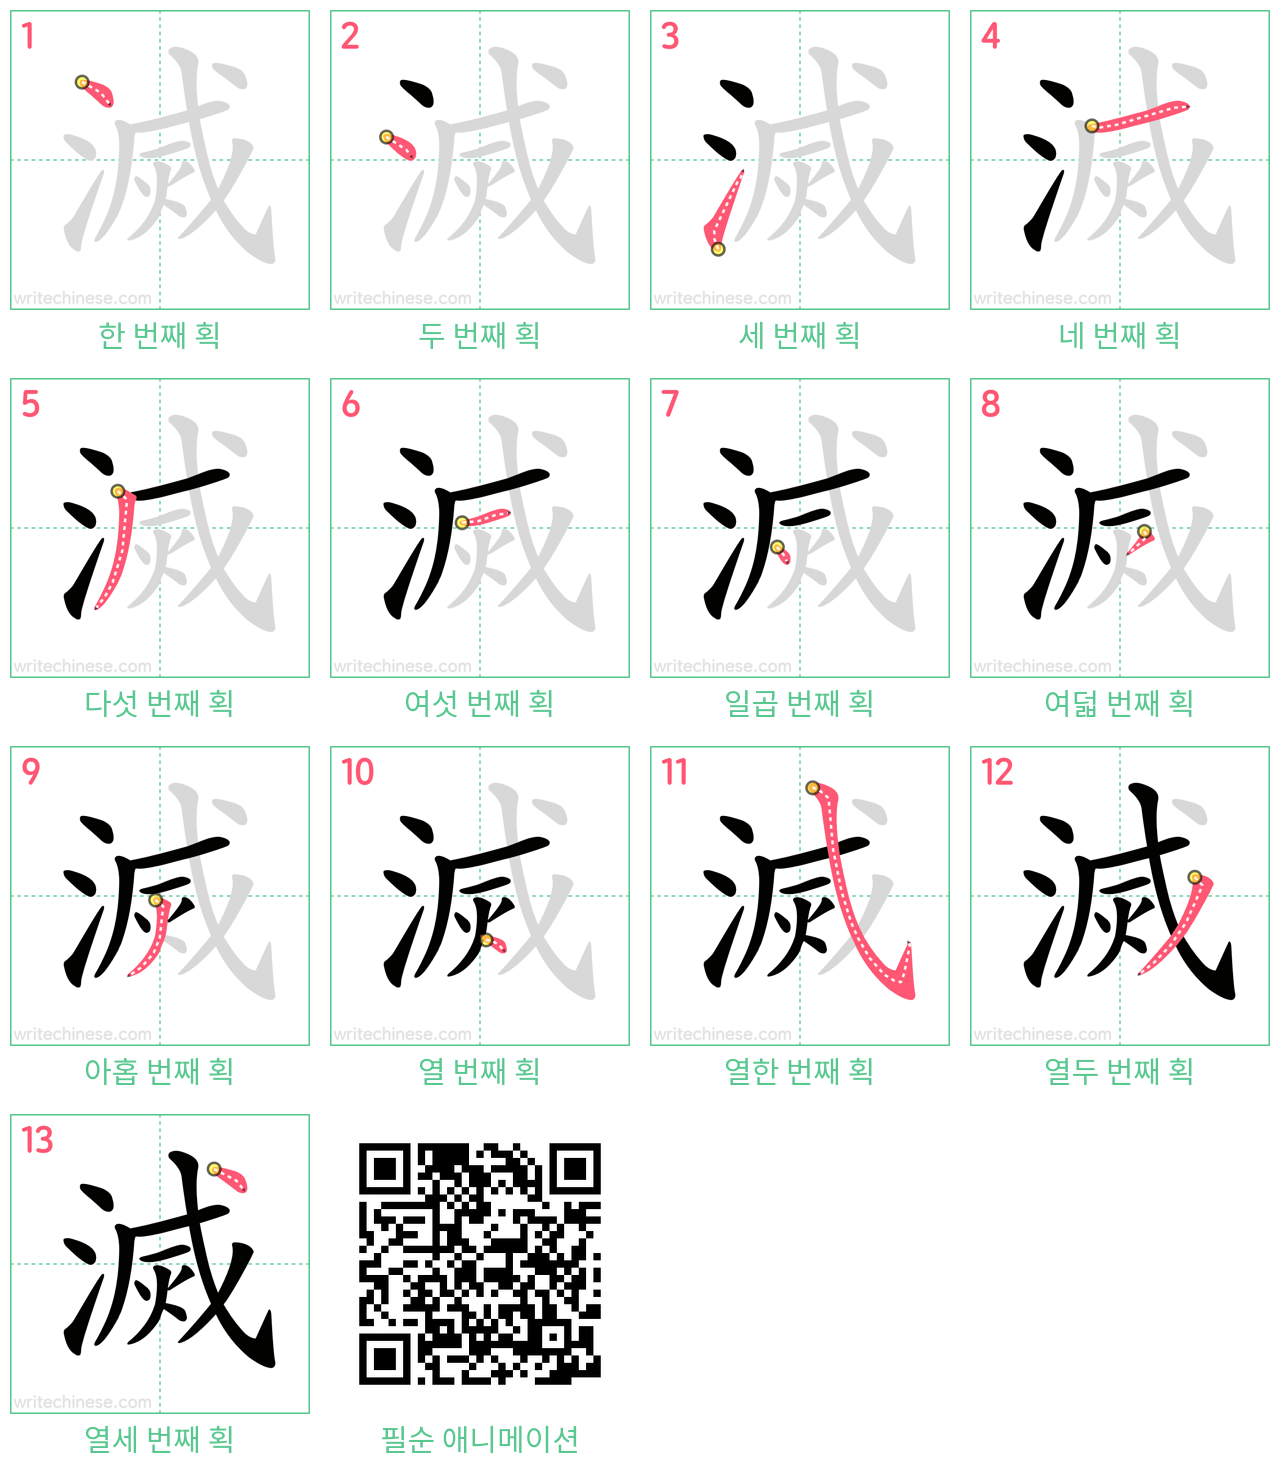 滅 step-by-step stroke order diagrams